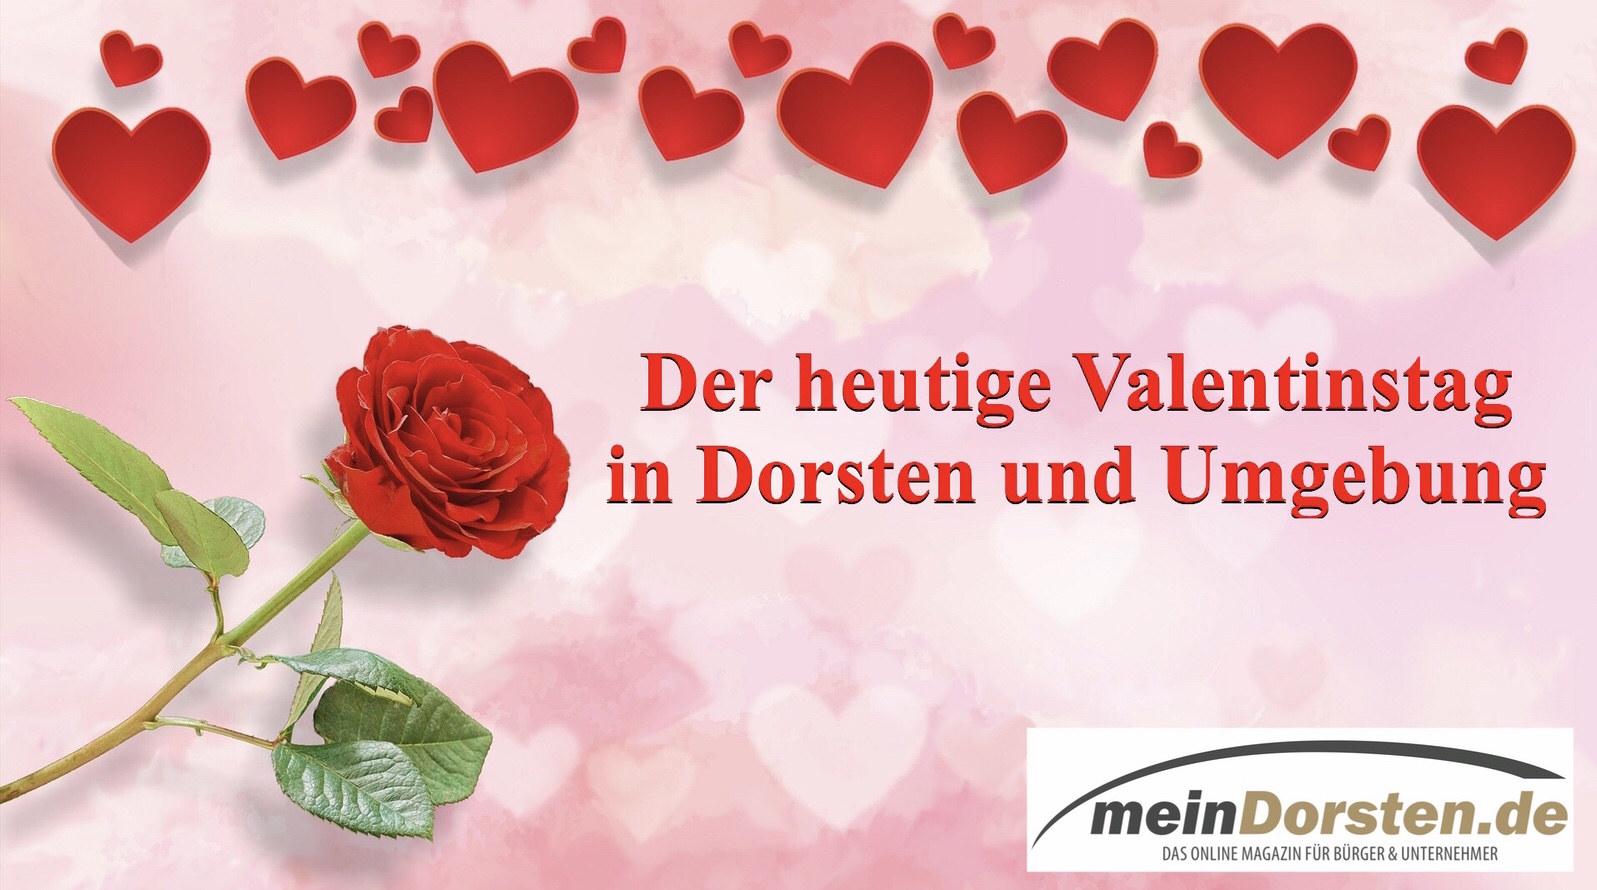 Der heutige Valentinstag in Dorsten und Umgebung